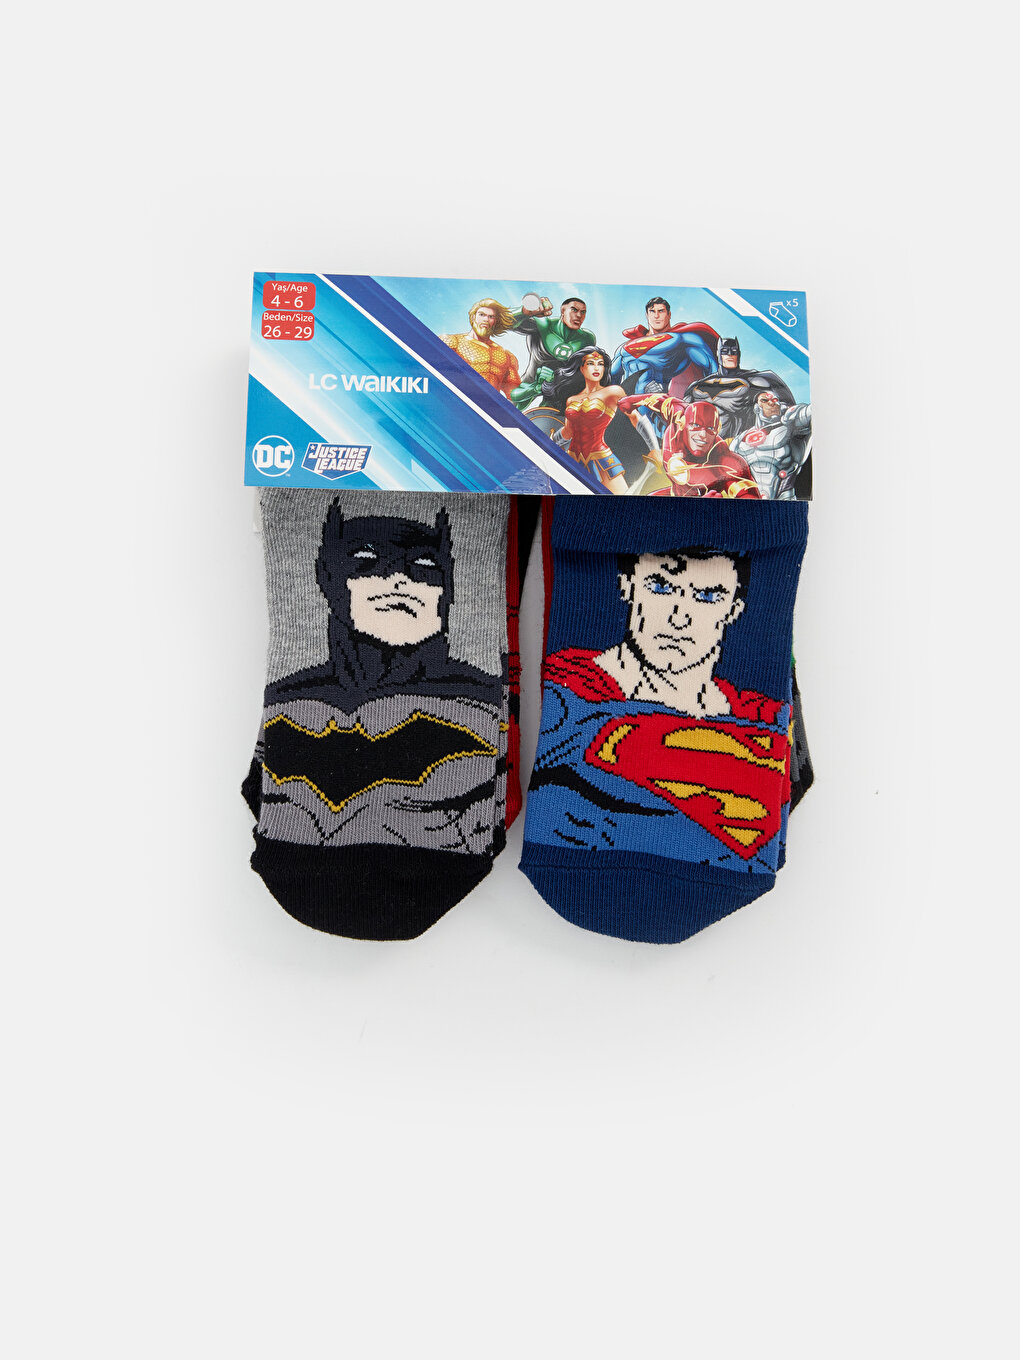 Batman Patterned Boy's Booties Socks 5 Pack -S44436Z4-K00 